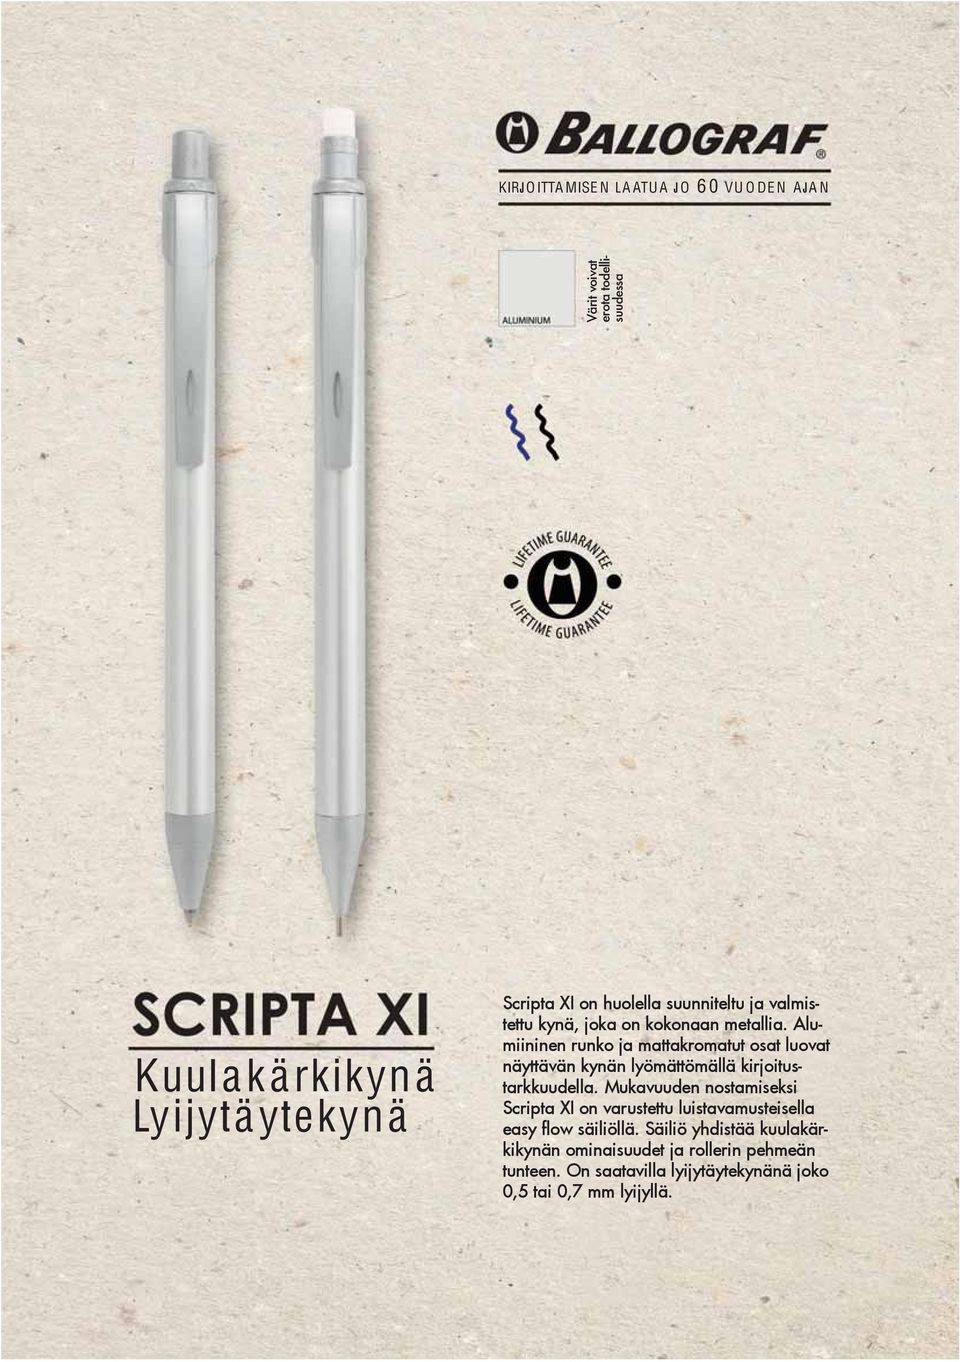 Mukavuuden nostamiseksi Scripta XI on varustettu luistavamusteisella easy flow säiliöllä.